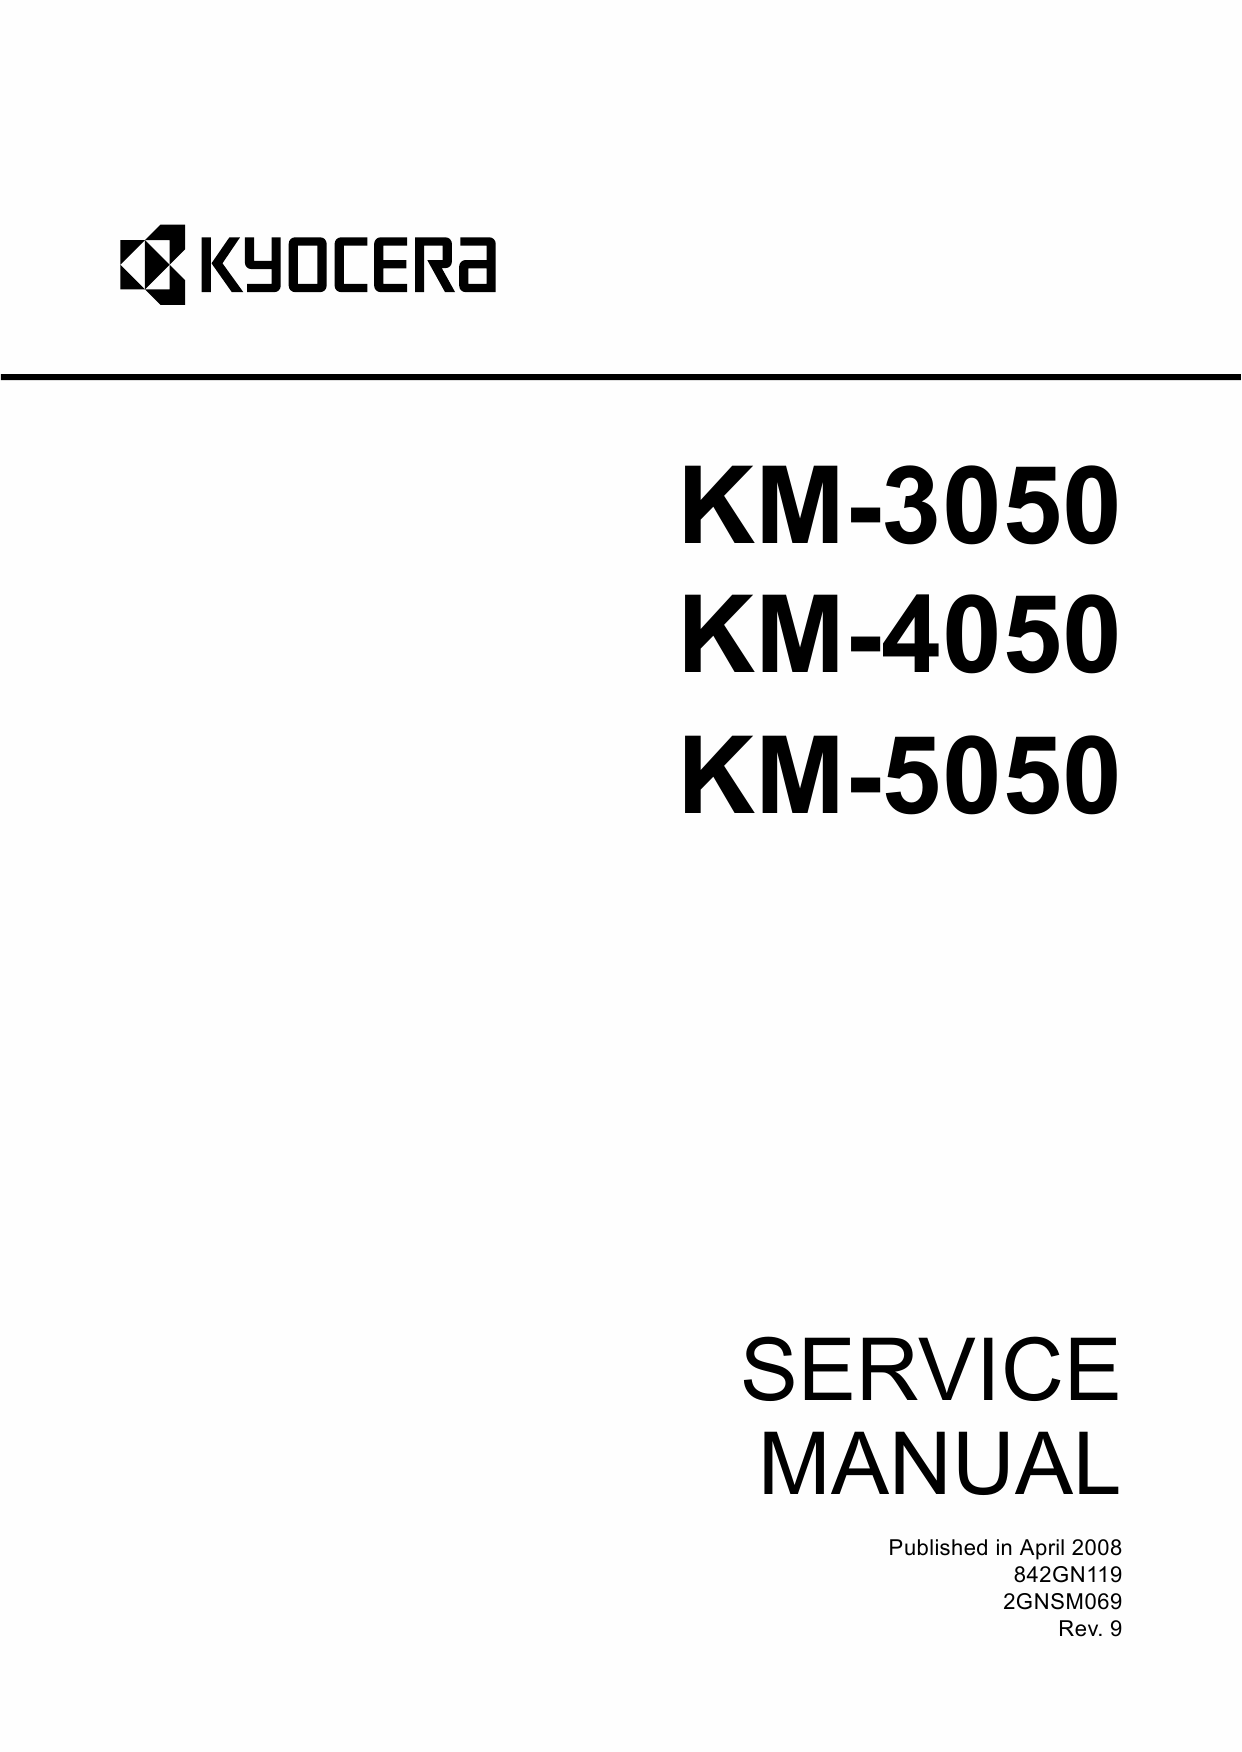 KYOCERA Copier KM-3050 4050 5050 Service Manual-1